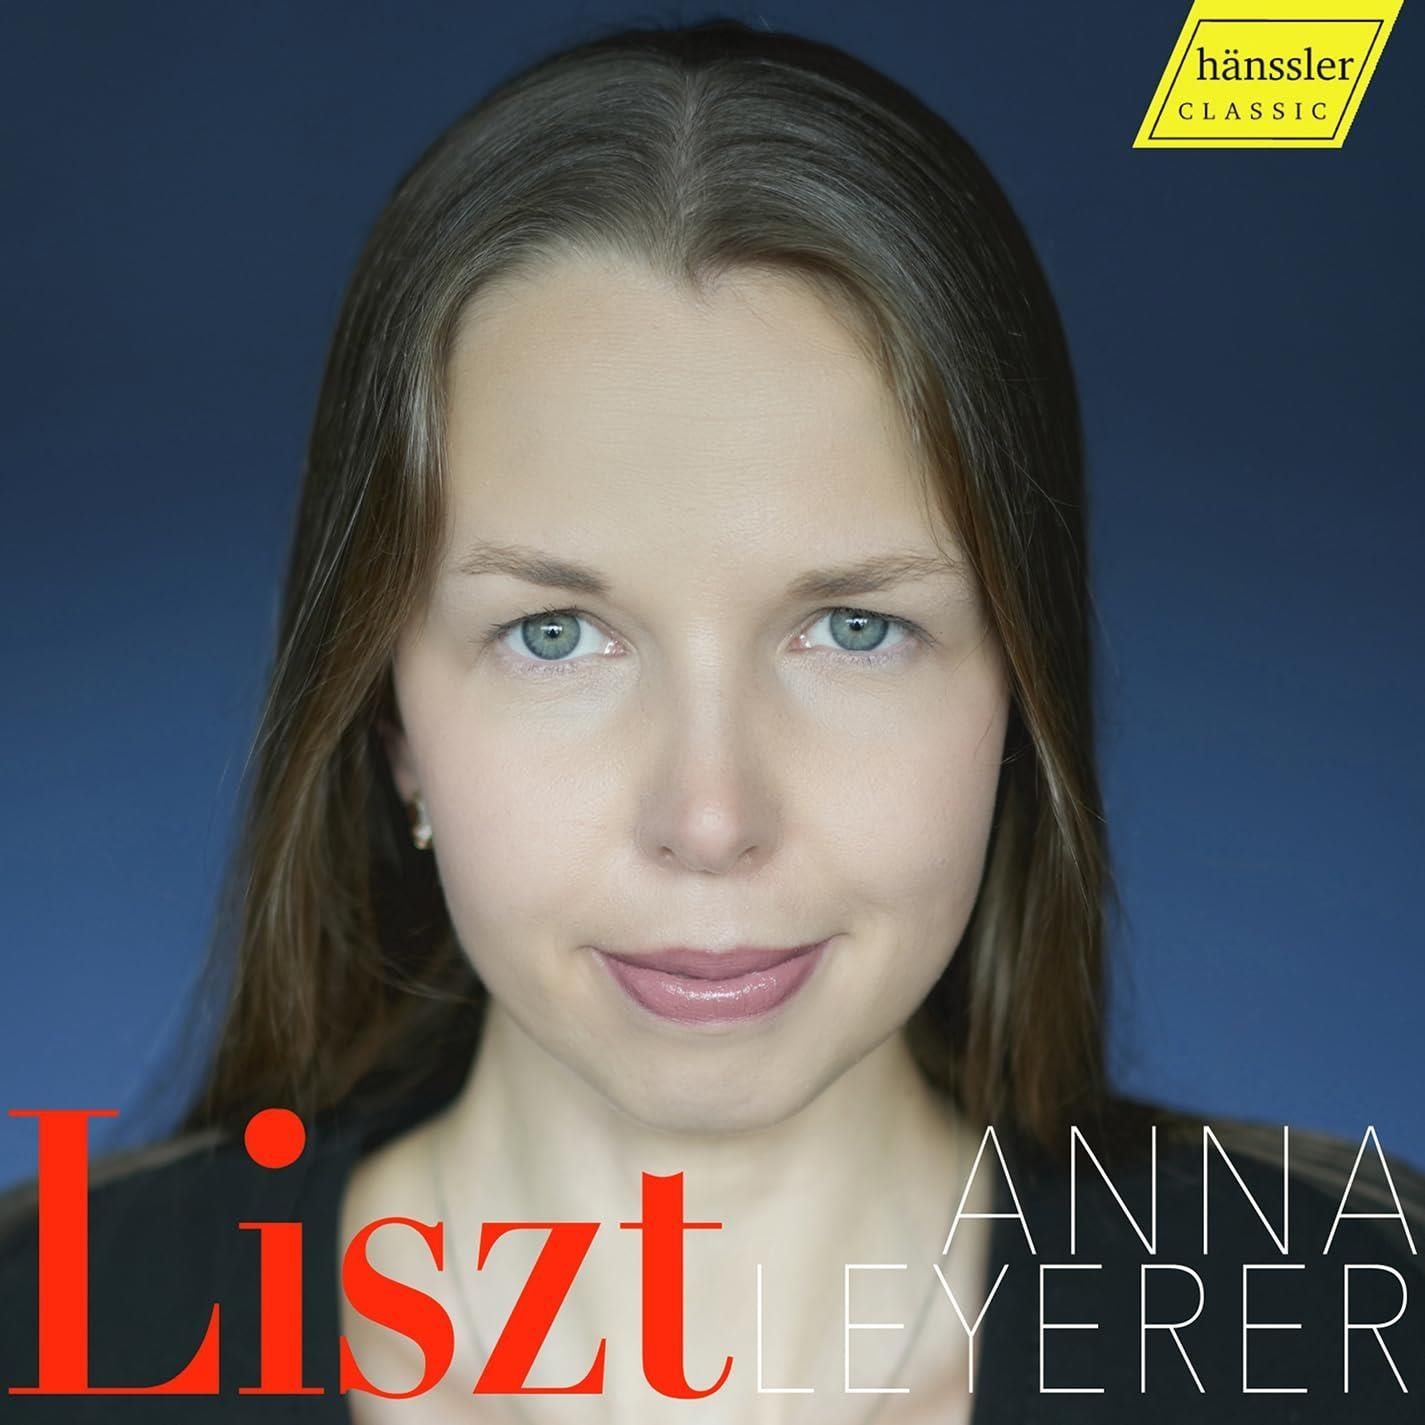 Audio Cd Anna Leyerer - Liszt NUOVO SIGILLATO SUBITO DISPONIBILE